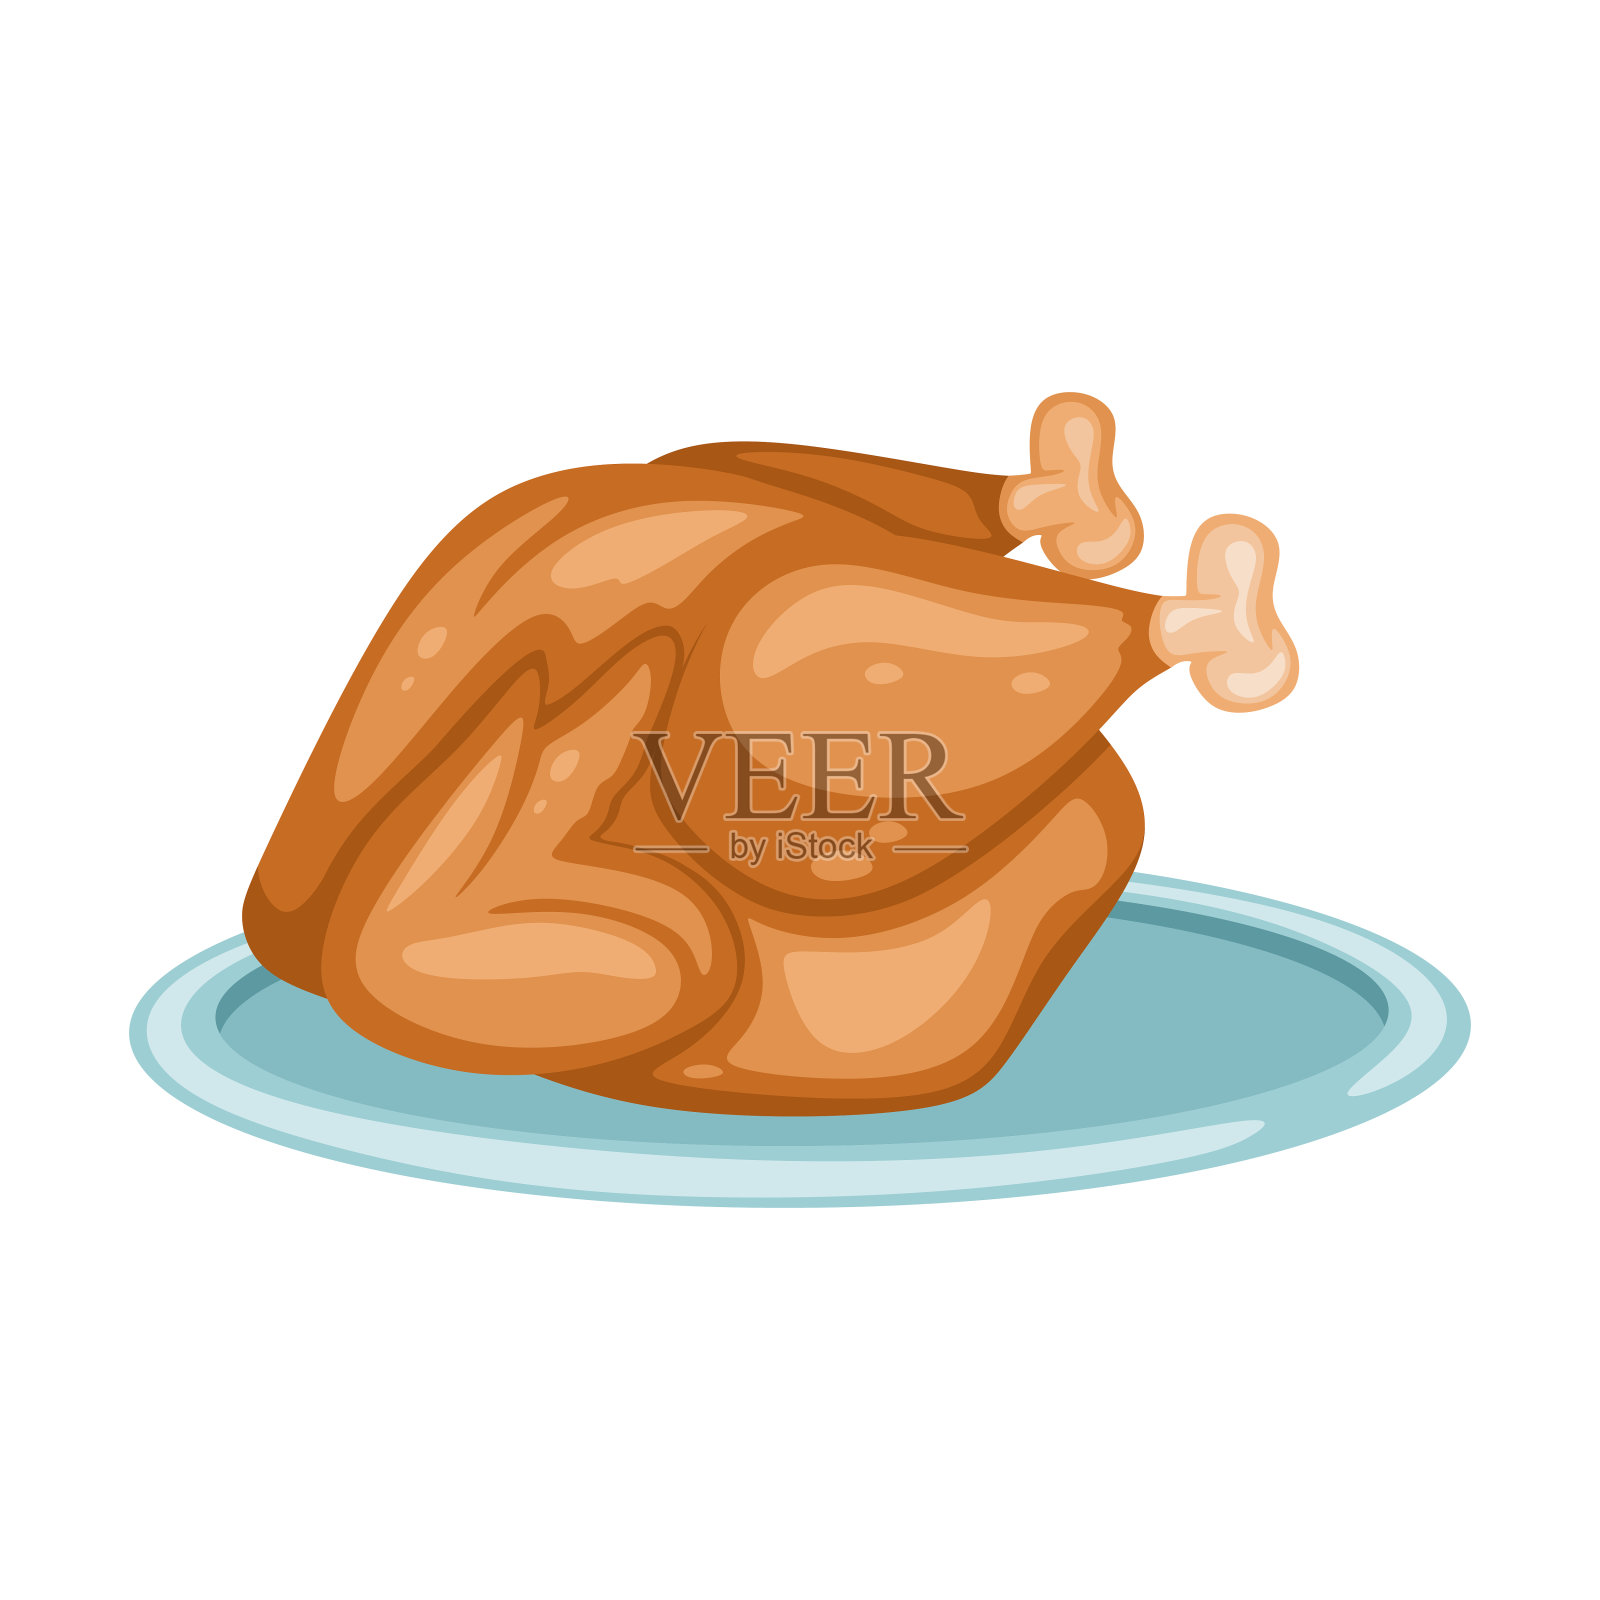 一只烤鸡的卡通插图。美味的食物设计元素图片